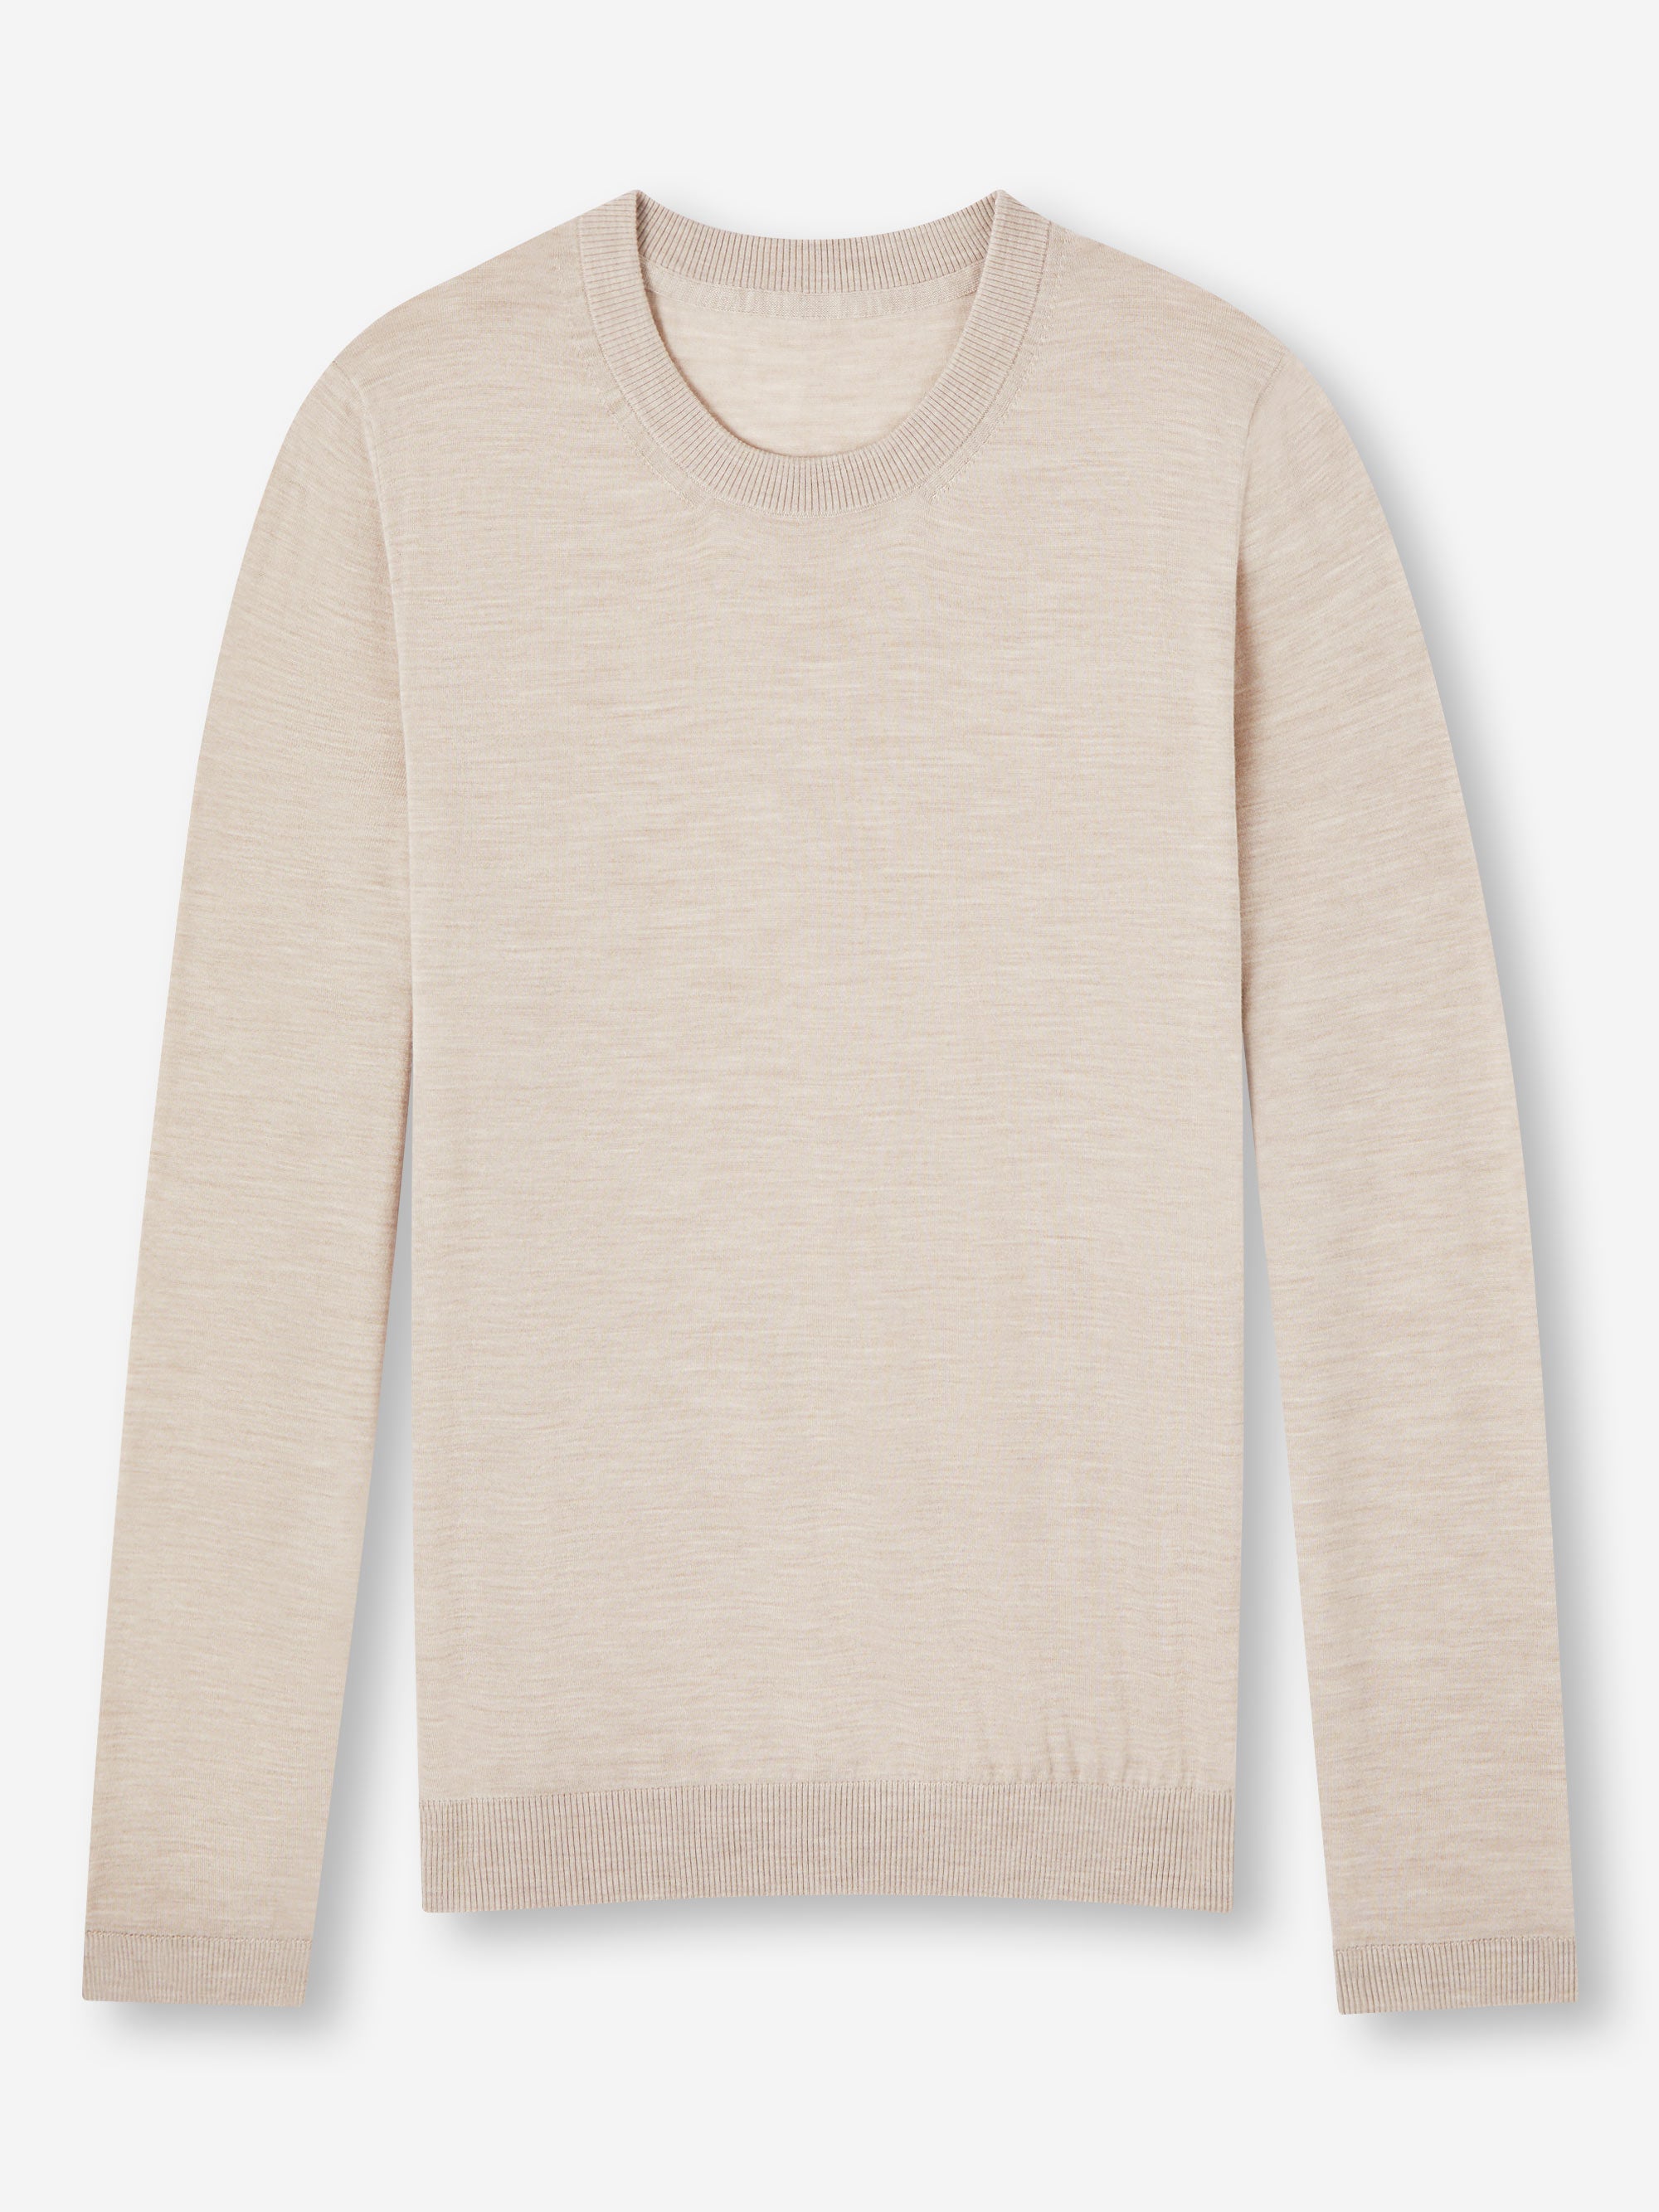 Men's Sweater Orson Merino Wool Oat